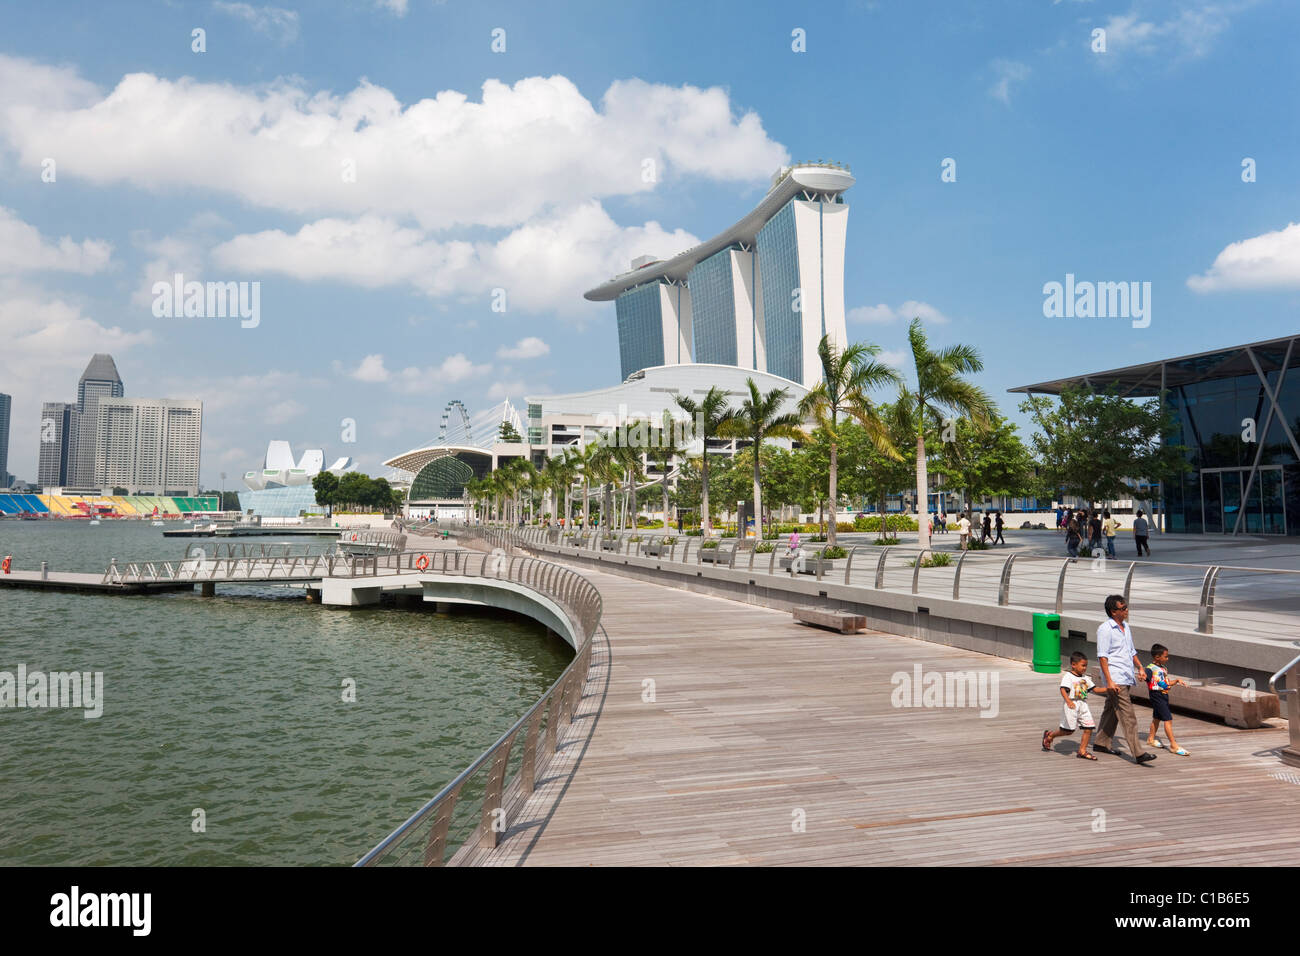 Afficher le long de la promenade Waterfront Marina Bay Sands à Singapour. Marina Bay, Singapour Banque D'Images